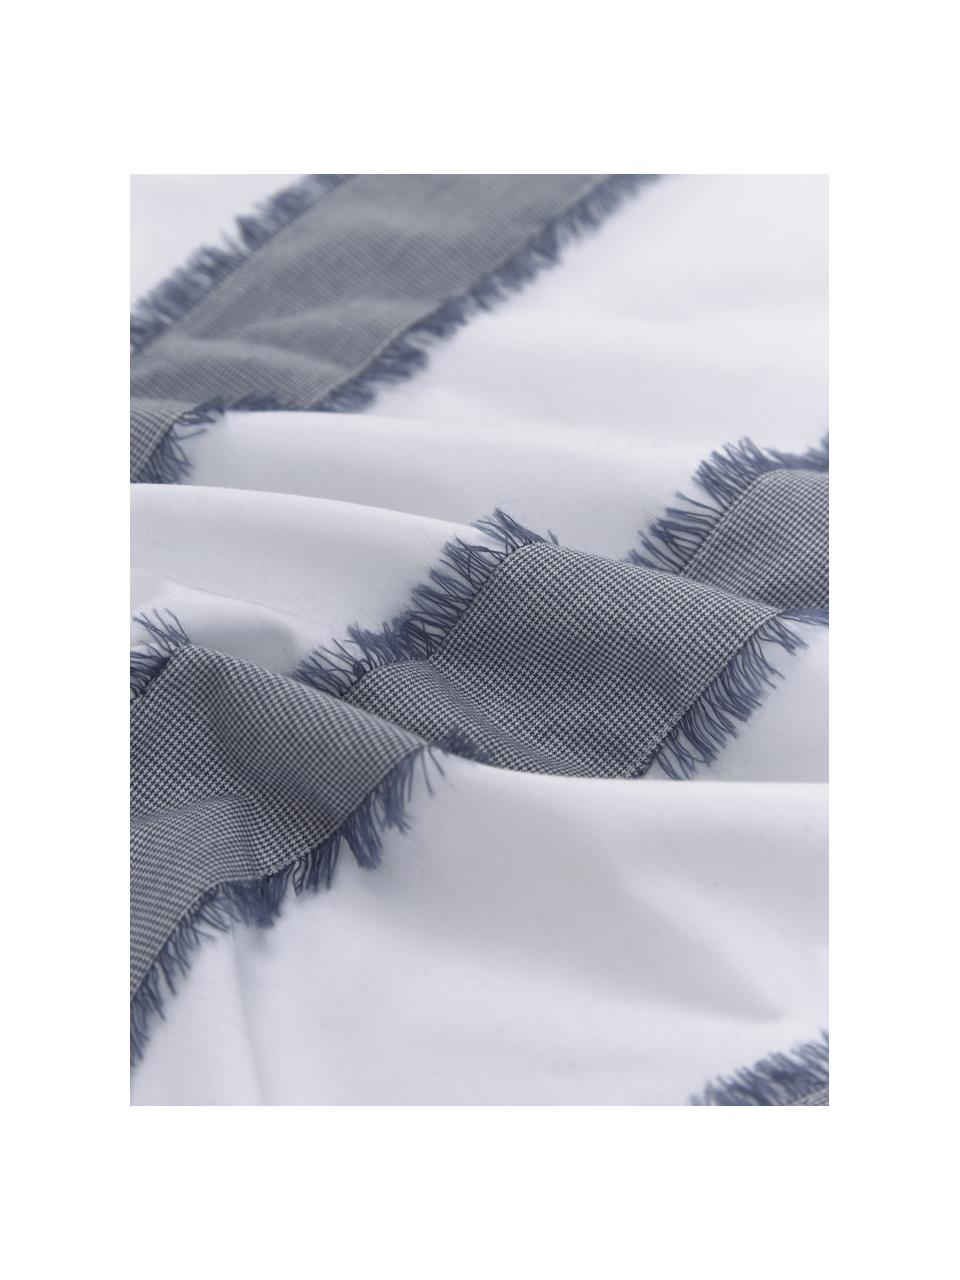 Baumwollperkal-Kopfkissenbezüge Raja in Blau/Weiß mit Fransen, 2 Stück, Webart: Perkal Fadendichte 205 TC, Weiß, Blau, B 40 x L 80 cm